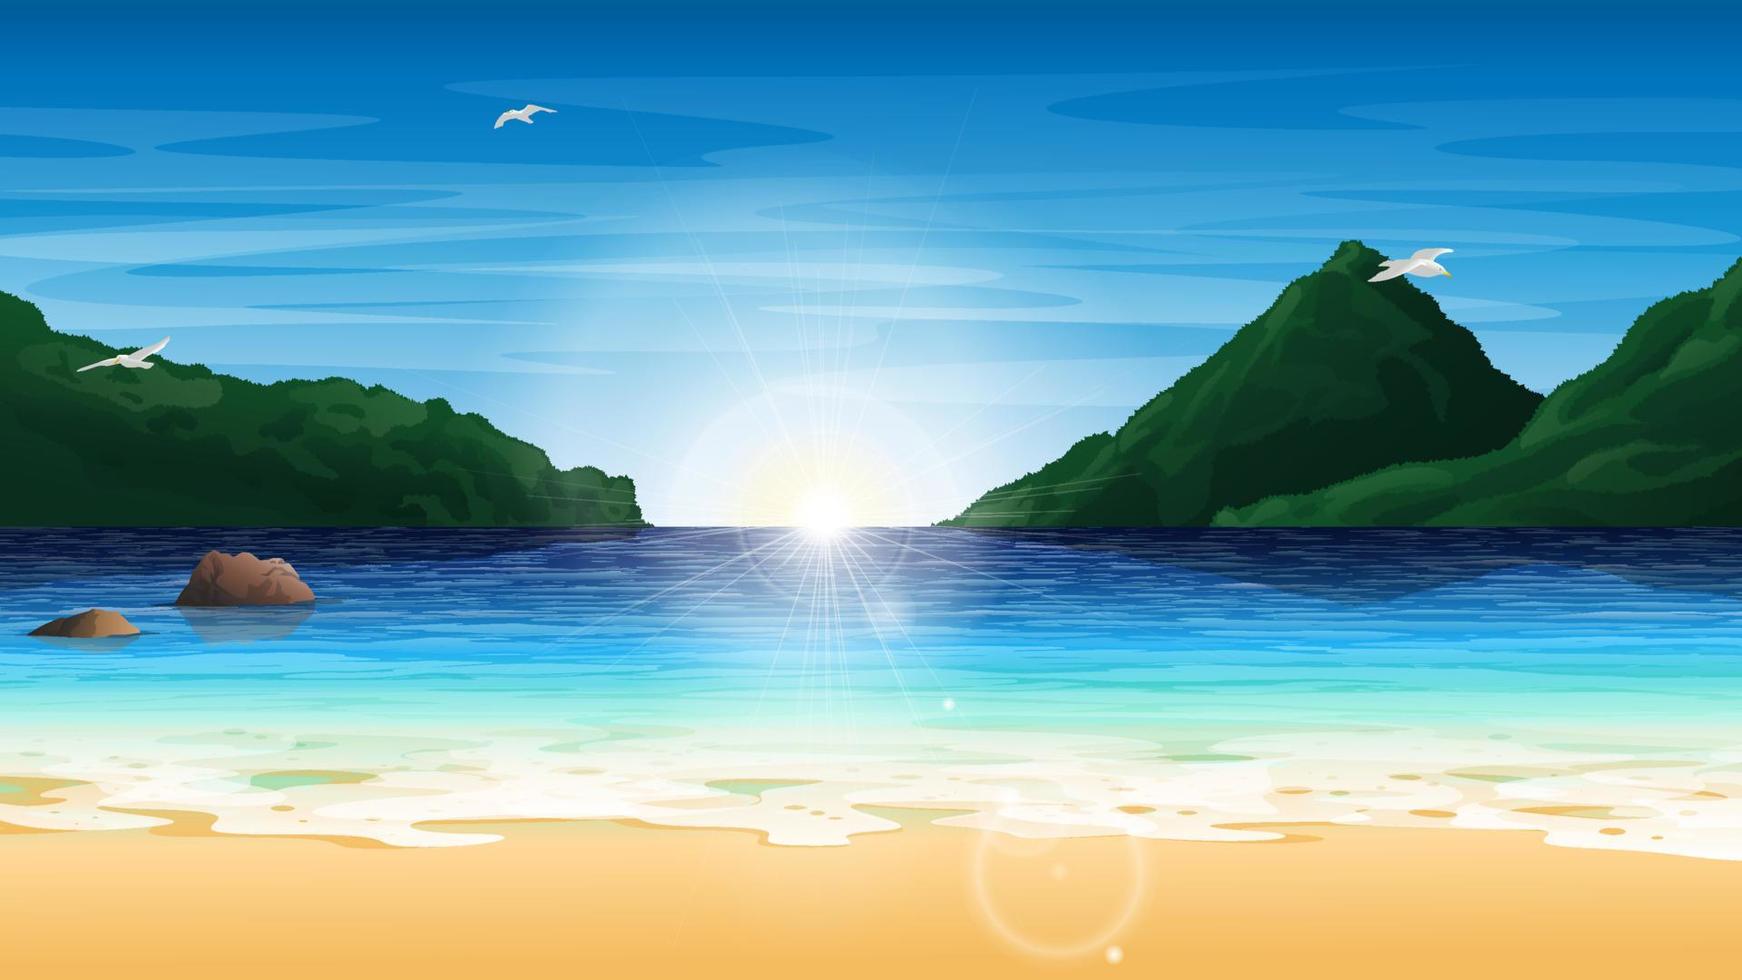 strand baai landschap achtergrond met bergen, rotsen en meeuwen, bij zonsopgang. vector illustratie